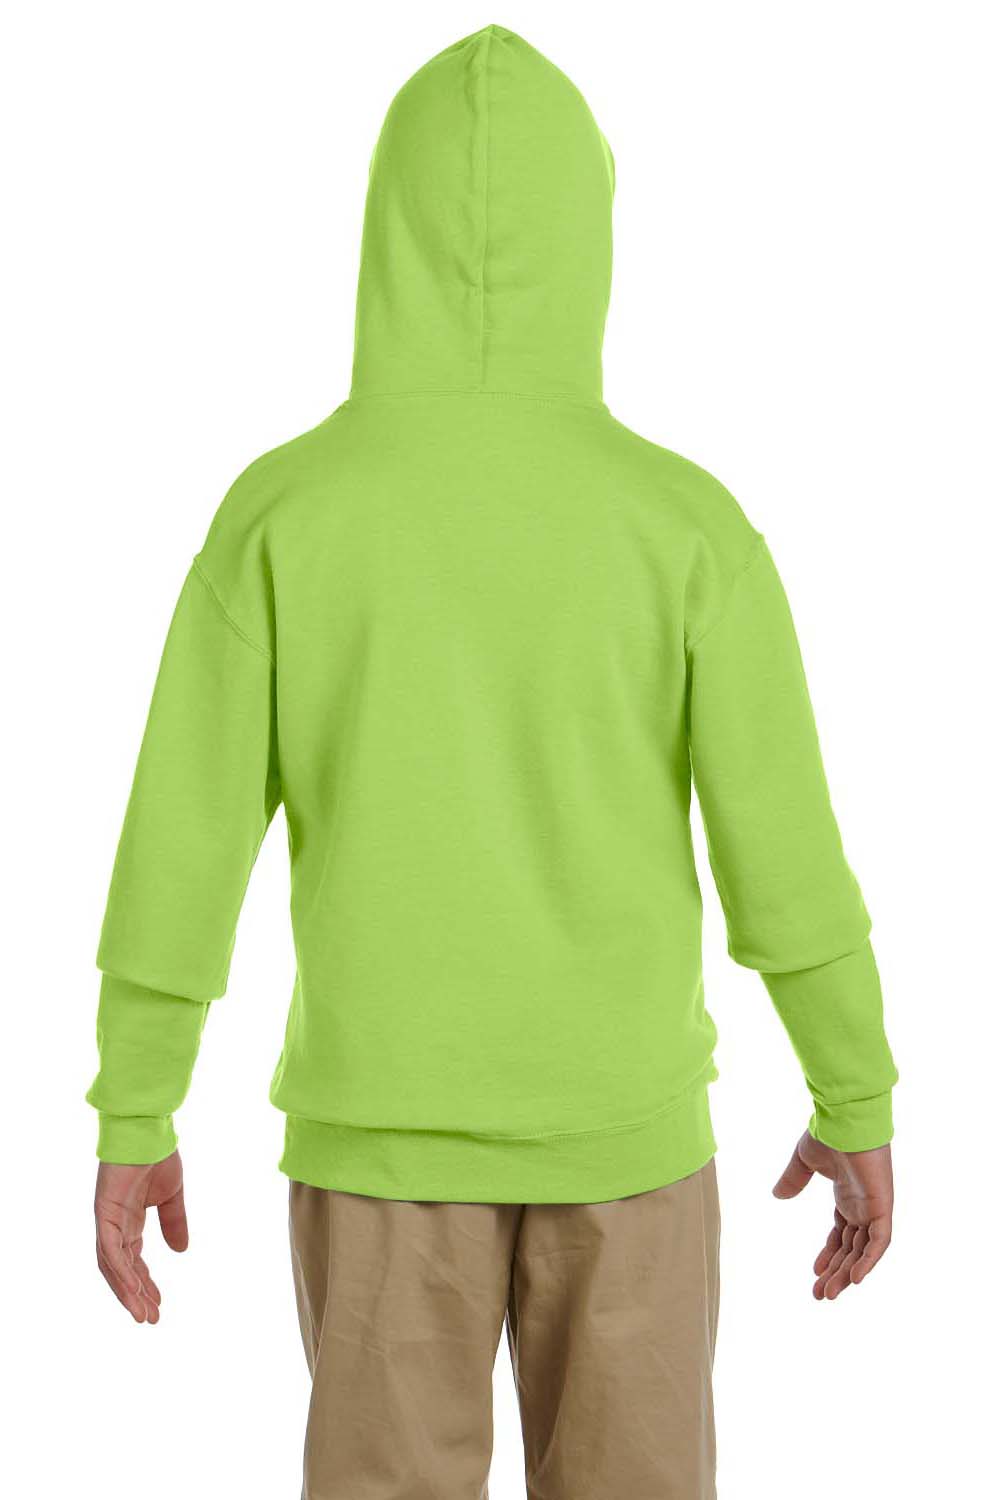 Jerzees 996Y Youth NuBlend Fleece Hooded Sweatshirt Hoodie Neon Green Back